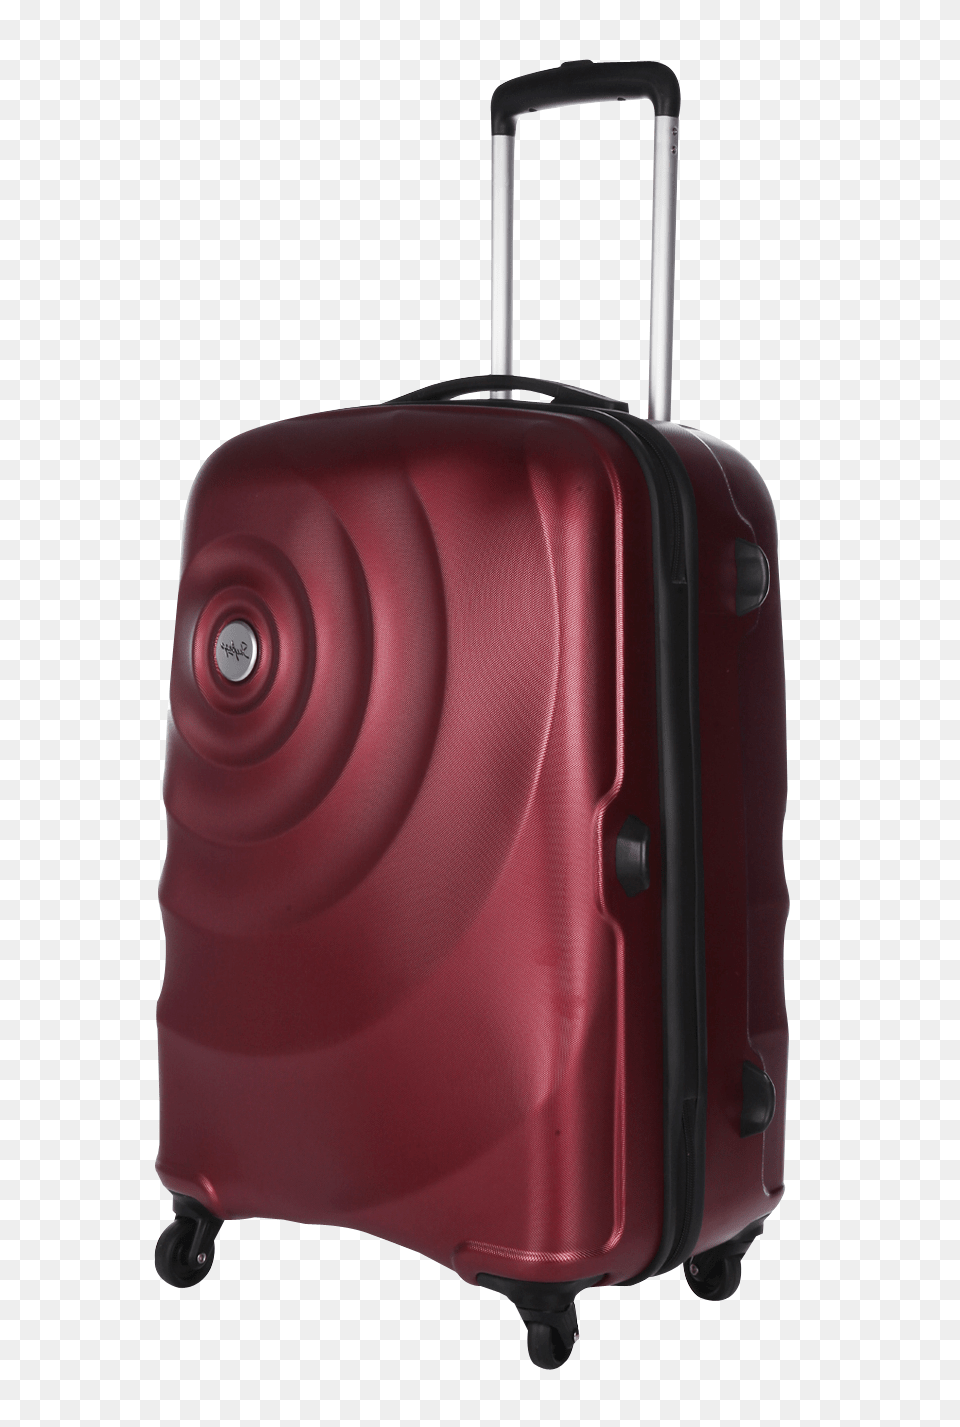 Pngpix Com Strolley Bag Transparent Image, Baggage, Suitcase, Car, Transportation Free Png